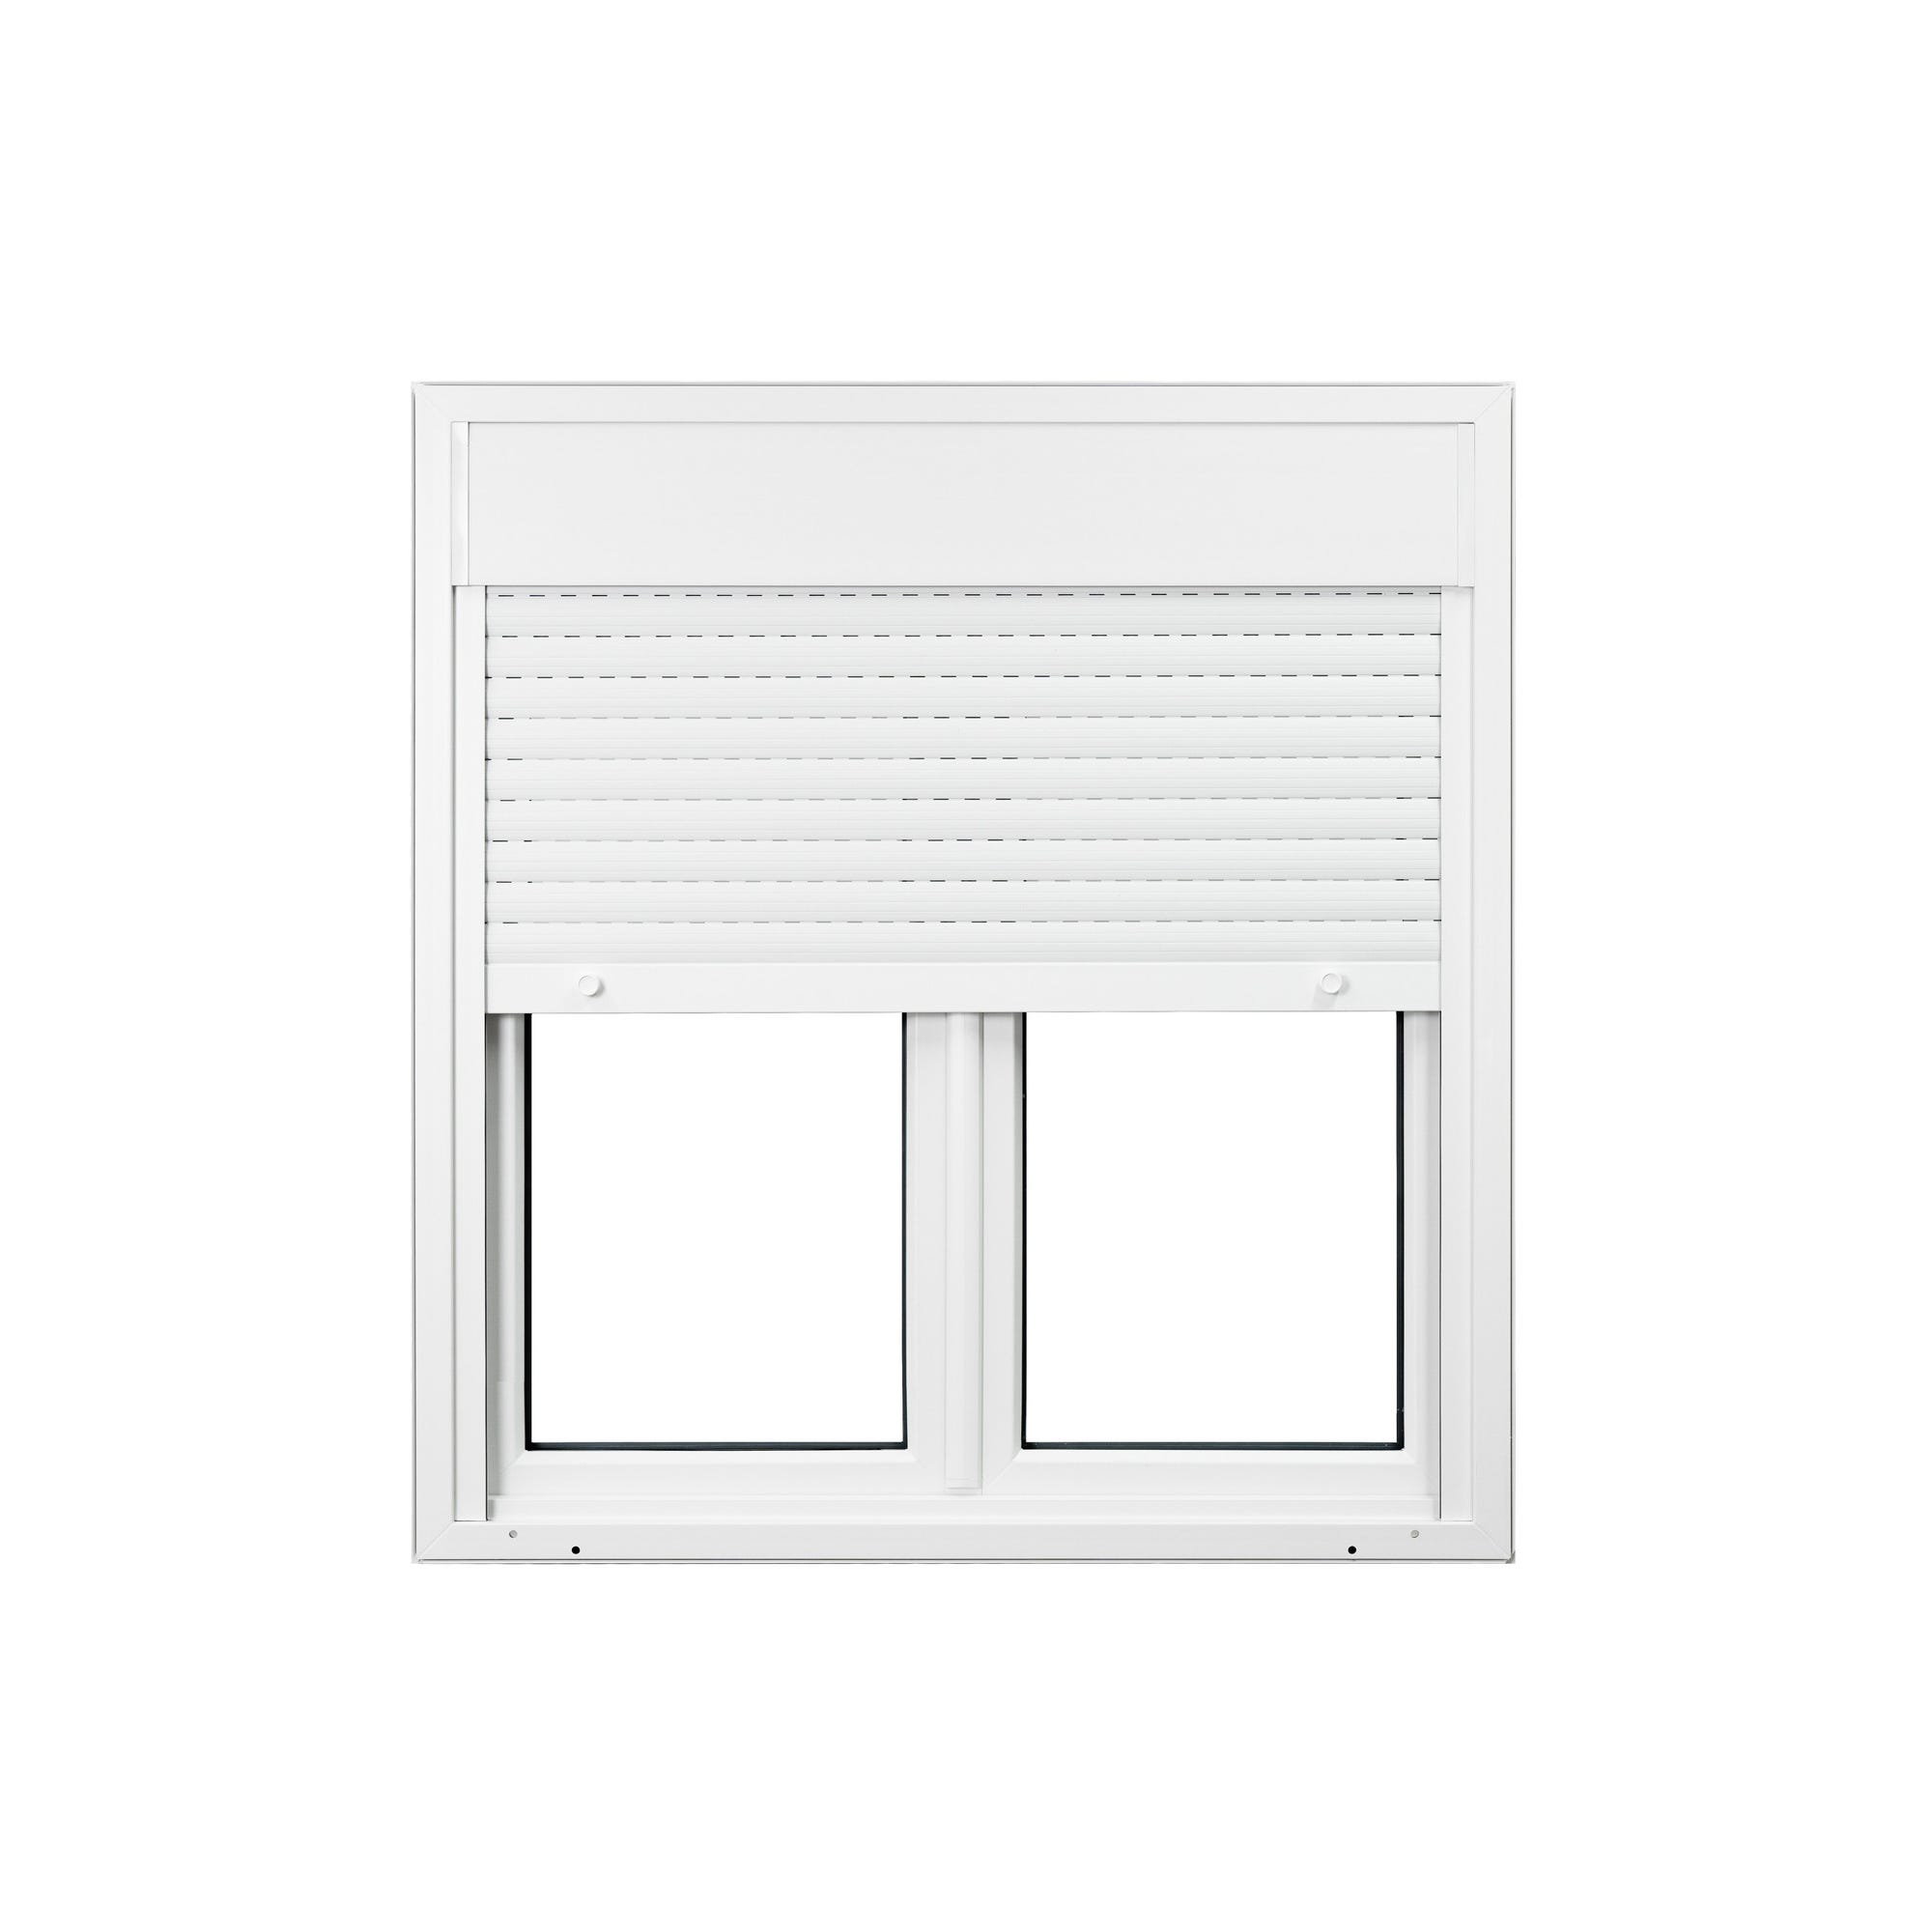 Fenêtre PVC 2 vantaux avec volet roulant intégré monobloc H.125 x l.120 cm - GROSFILLEX 2